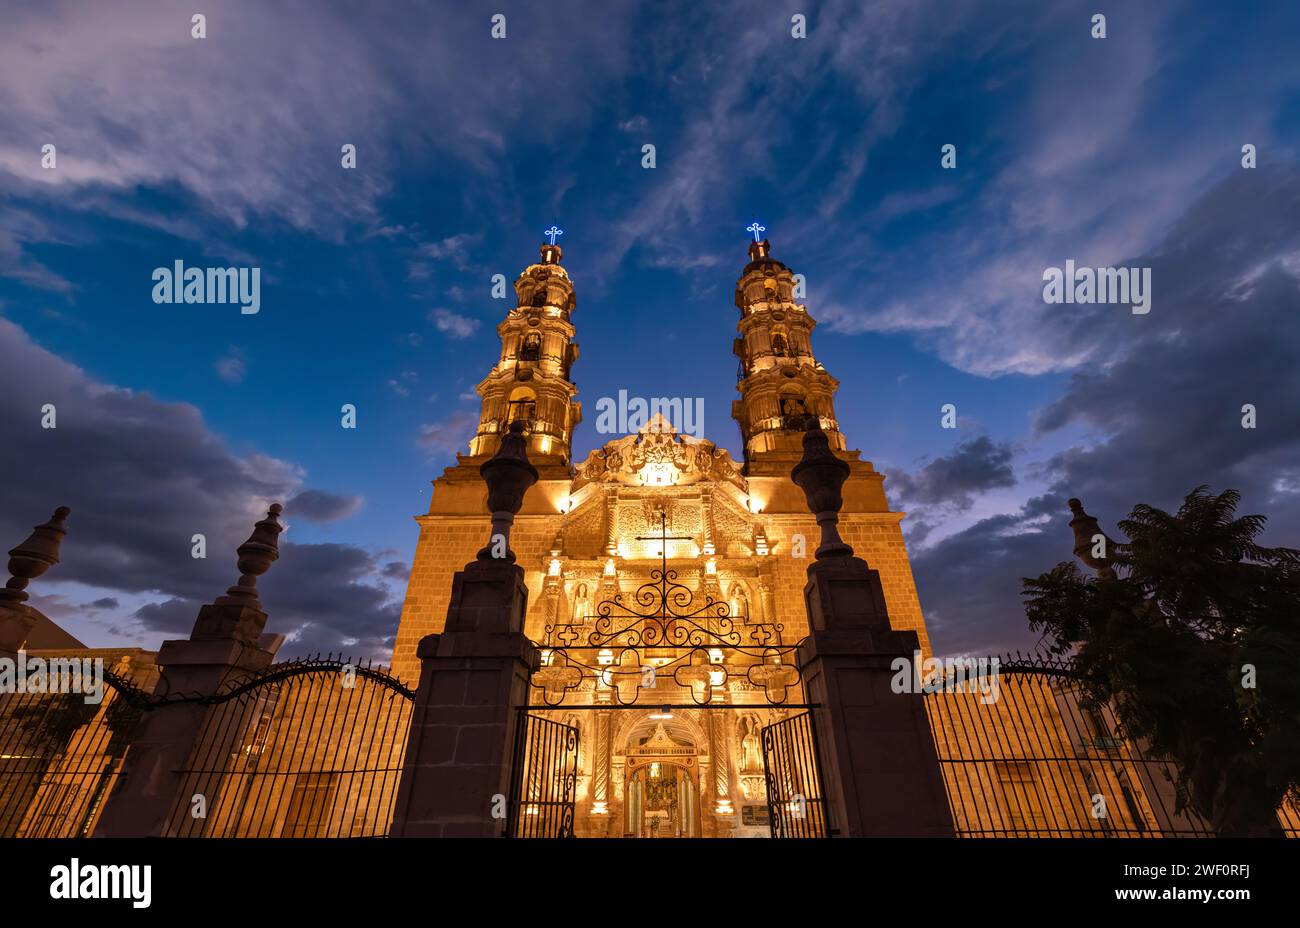 Mexico, Aguascalientes Cathedral Basilica in historic colonial center near Plaza de la Patria. Stock Photo